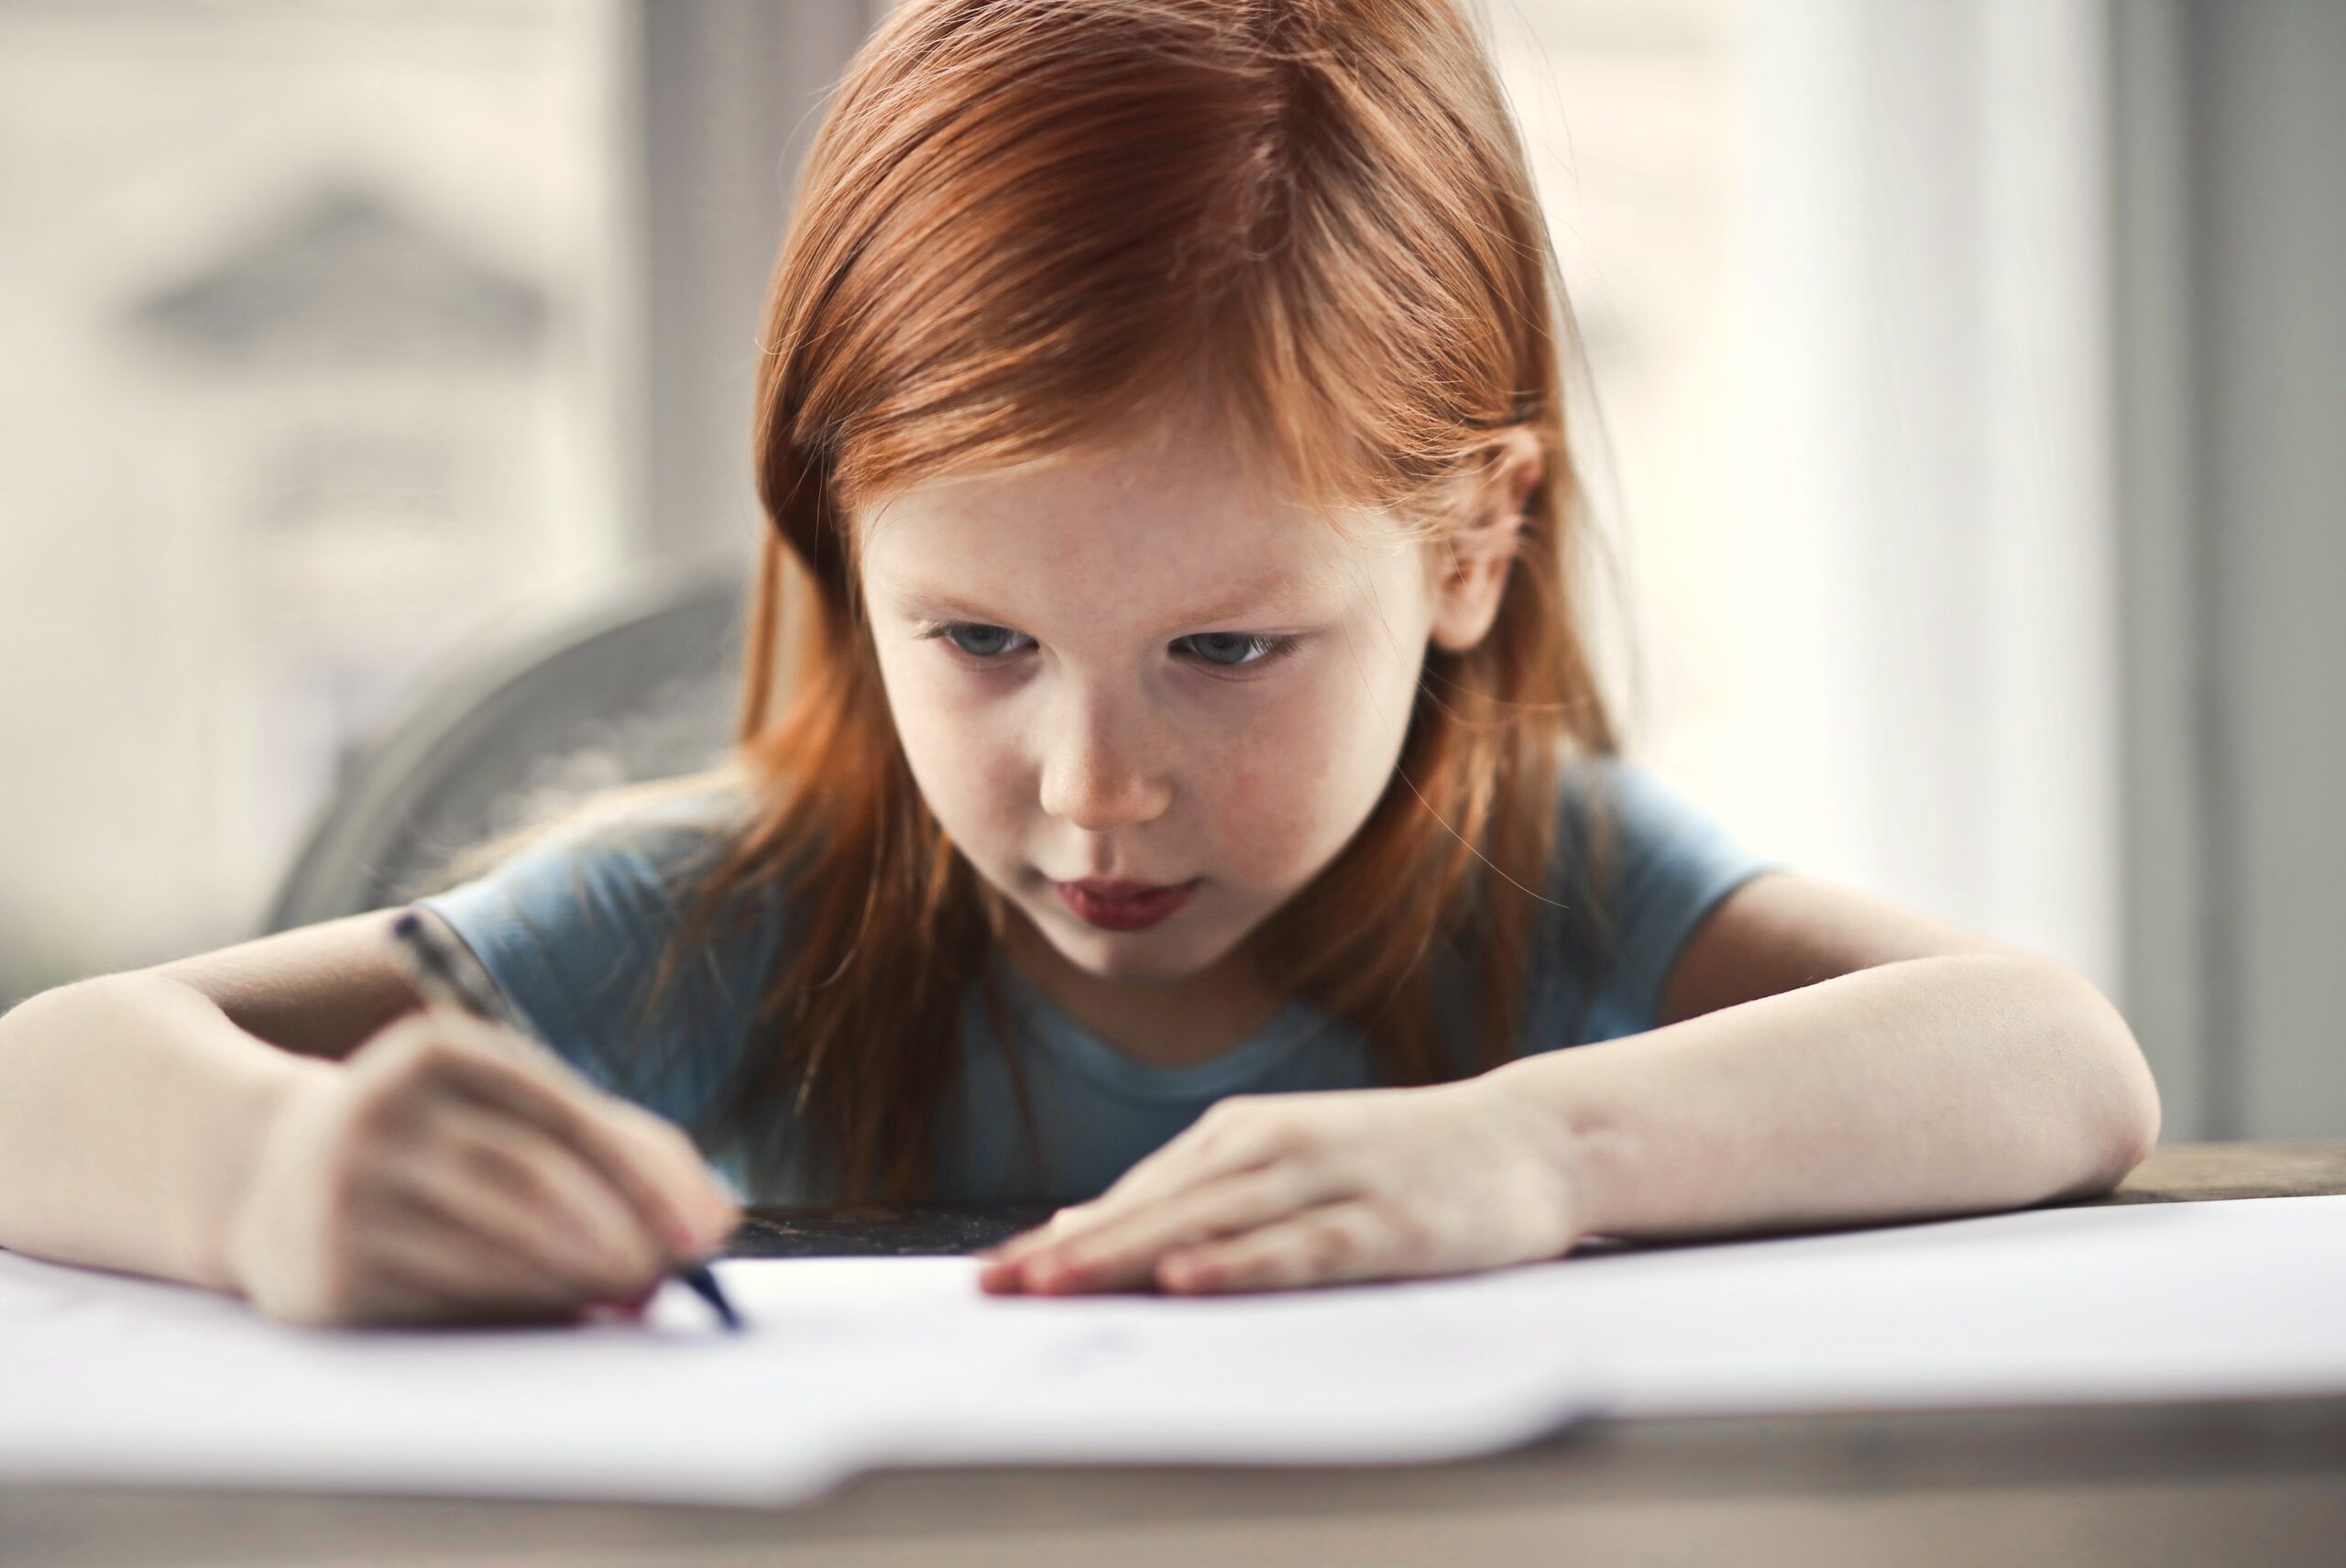 Escribir a mano mejora la memoria de los niños